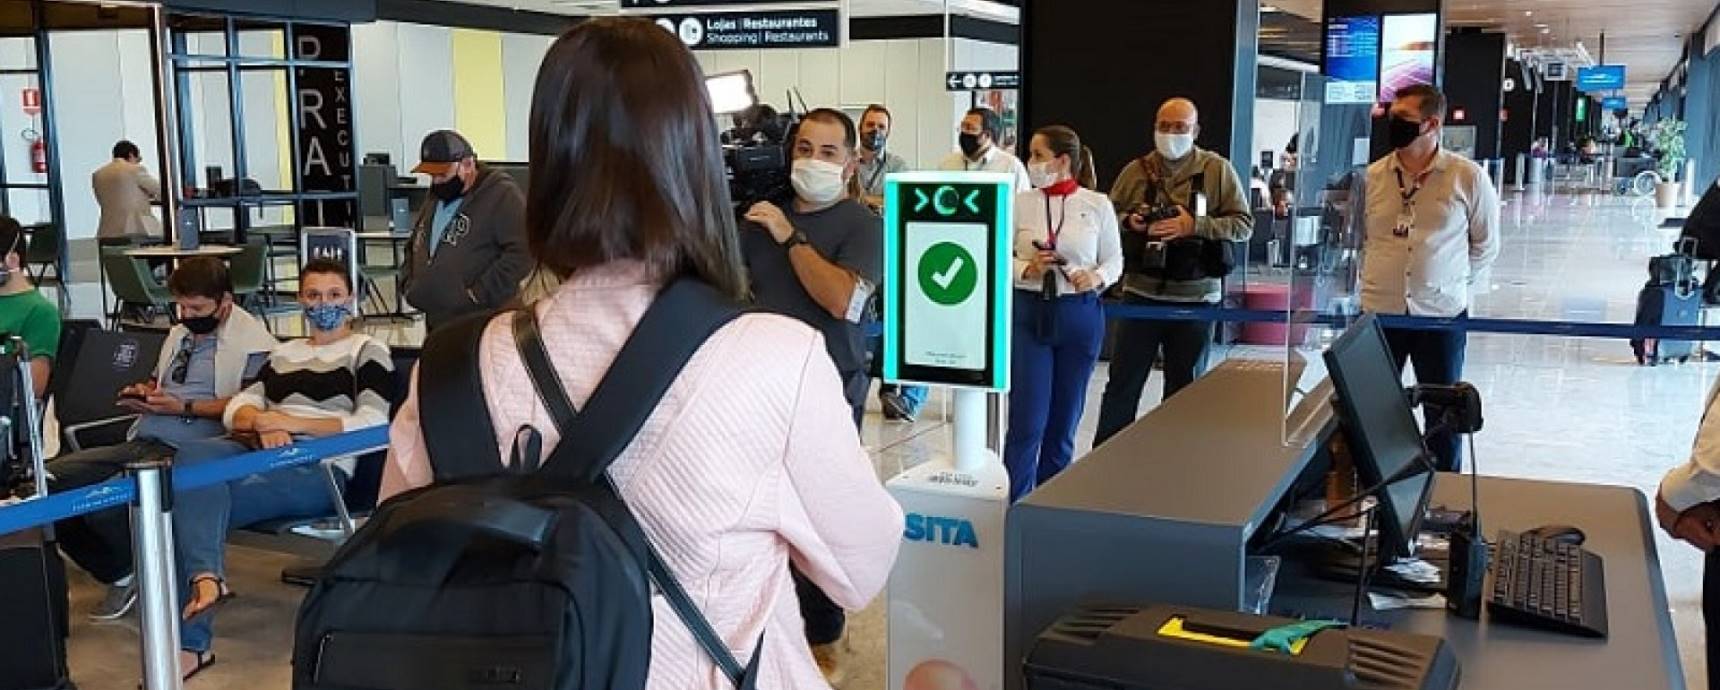 Gobierno Federal prueba embarque con reconocimiento facial en Aeropuerto de Florianópolis